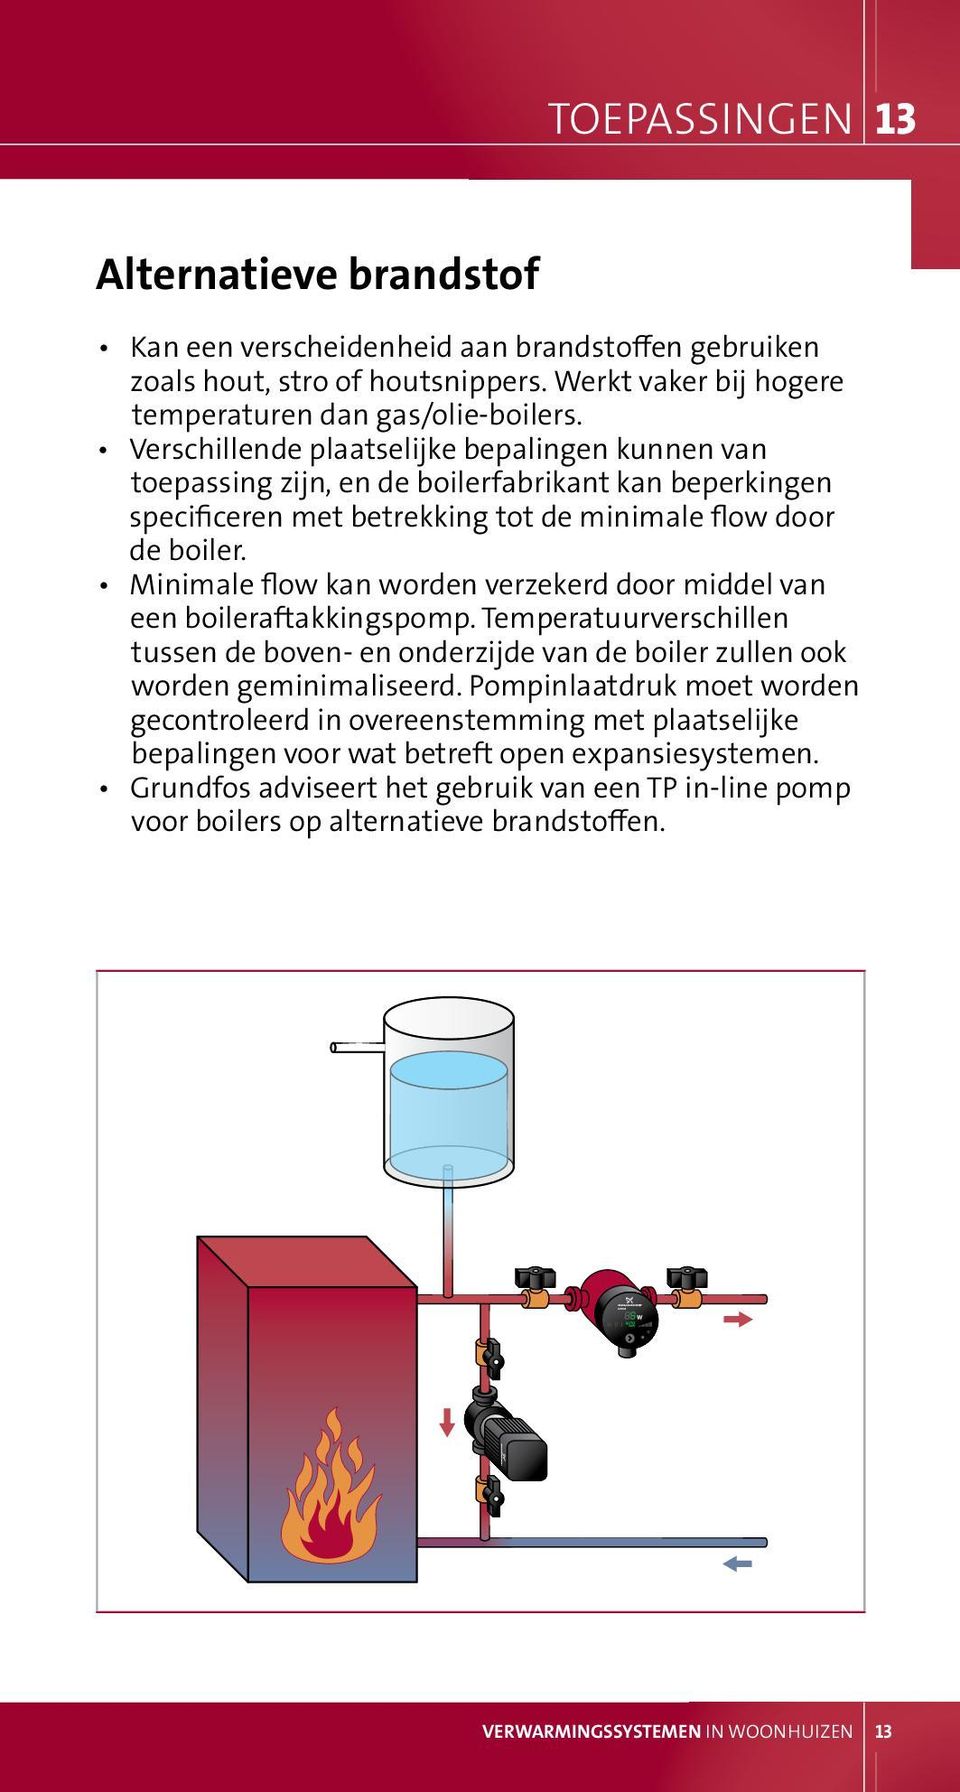 minimale flow kan worden verzekerd door middel van een boileraftakkingspomp. Temperatuurverschillen tussen de boven- en onderzijde van de boiler zullen ook worden geminimaliseerd.